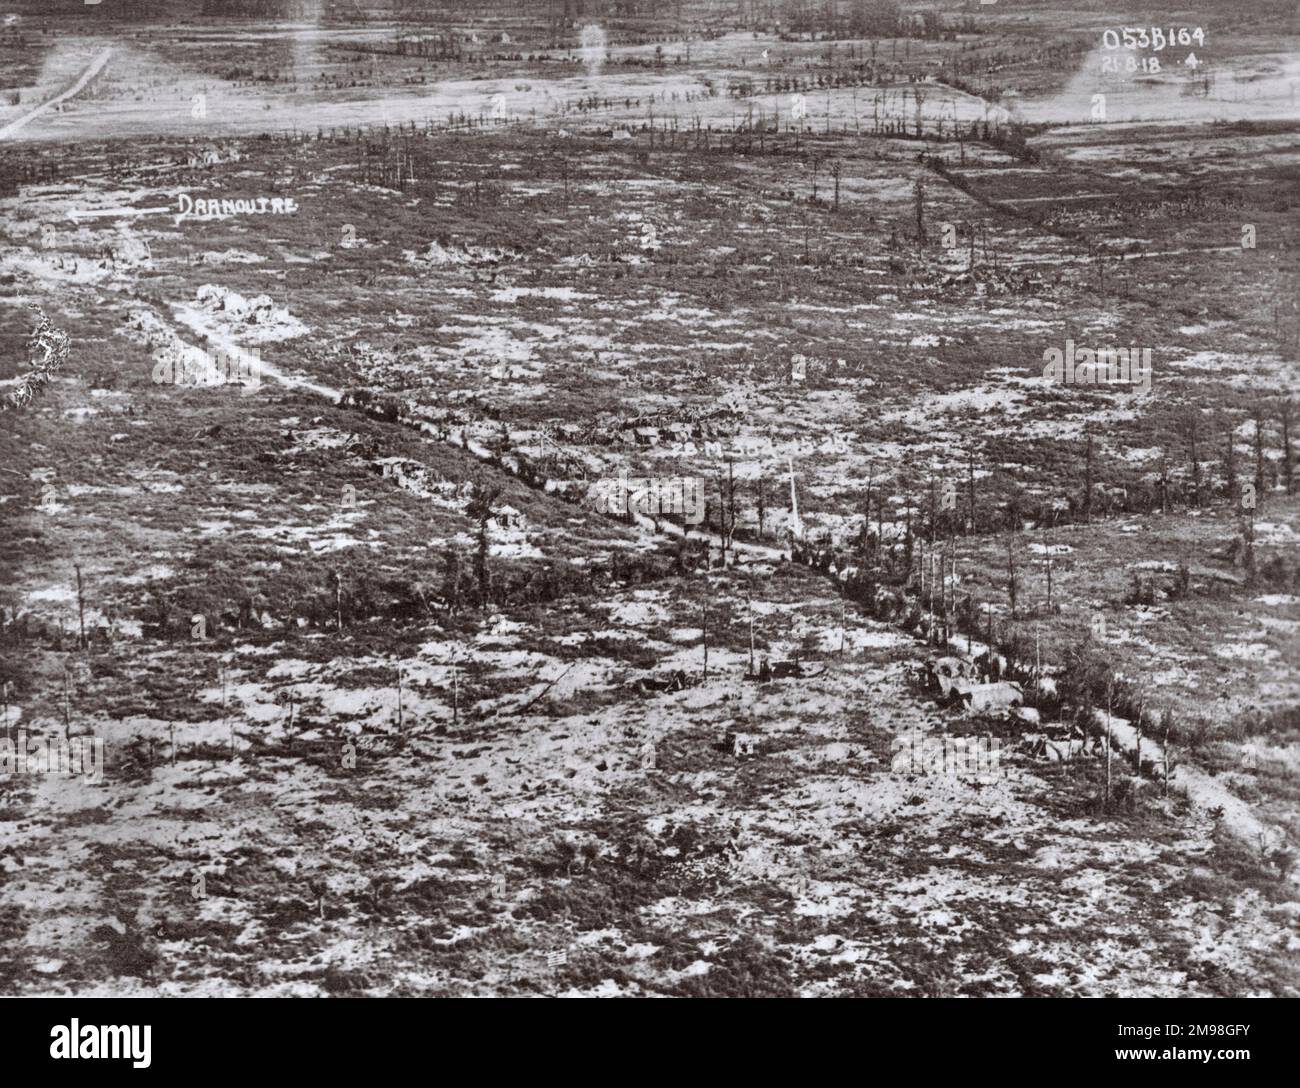 Luftaufnahme, Ruinen von Dranoutre, Westflandern, Belgien, am 21. August 1918, Baumstümpfe sichtbar. Stockfoto